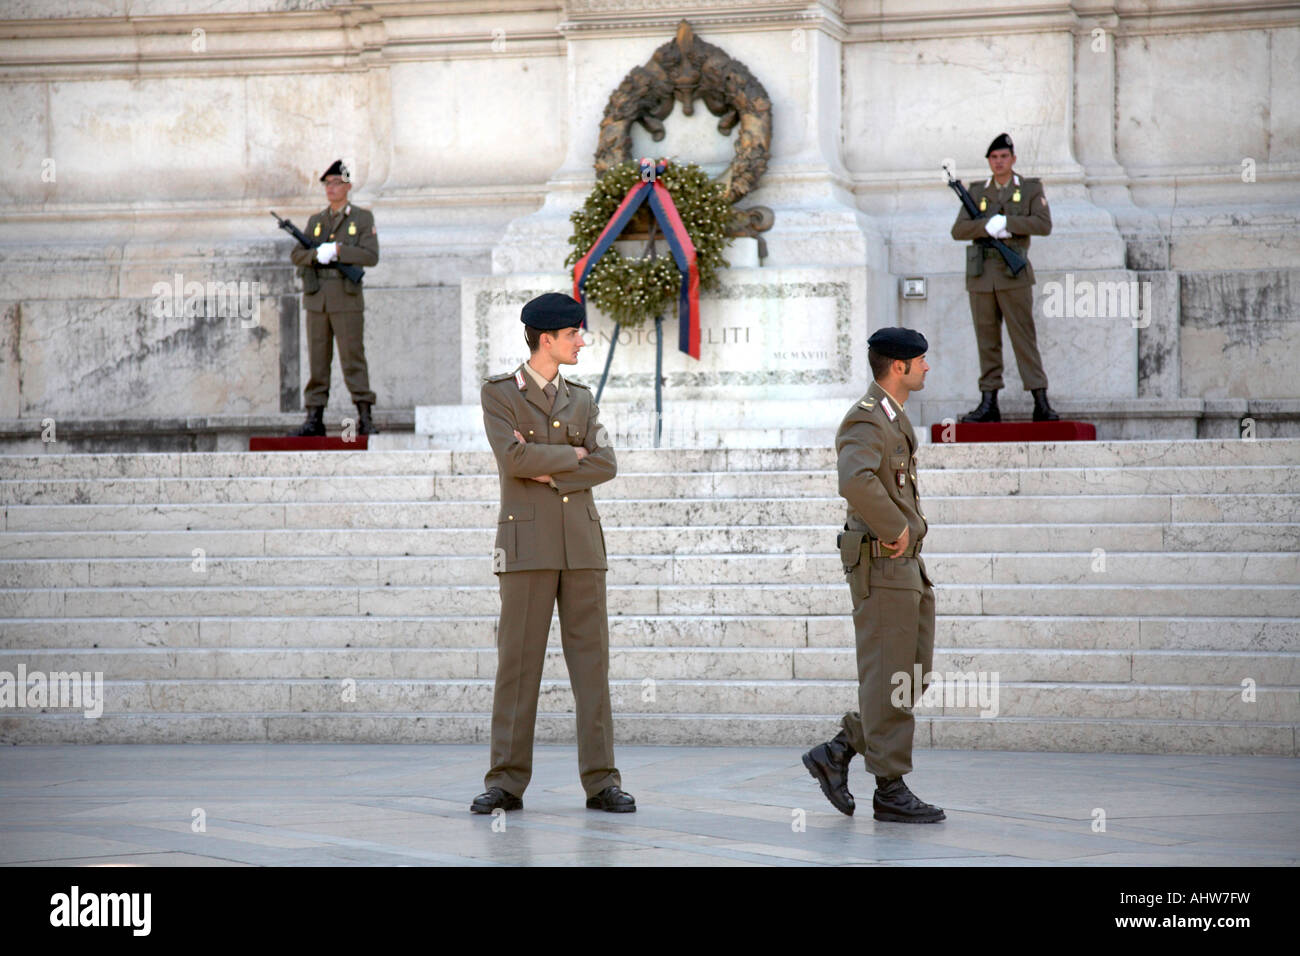 Offiziere der italienischen Armee bewachen die Kränze und ewigen Flammen als zwei andere Offiziere Patrouille am Denkmal Vittorio Emanuele II Stockfoto